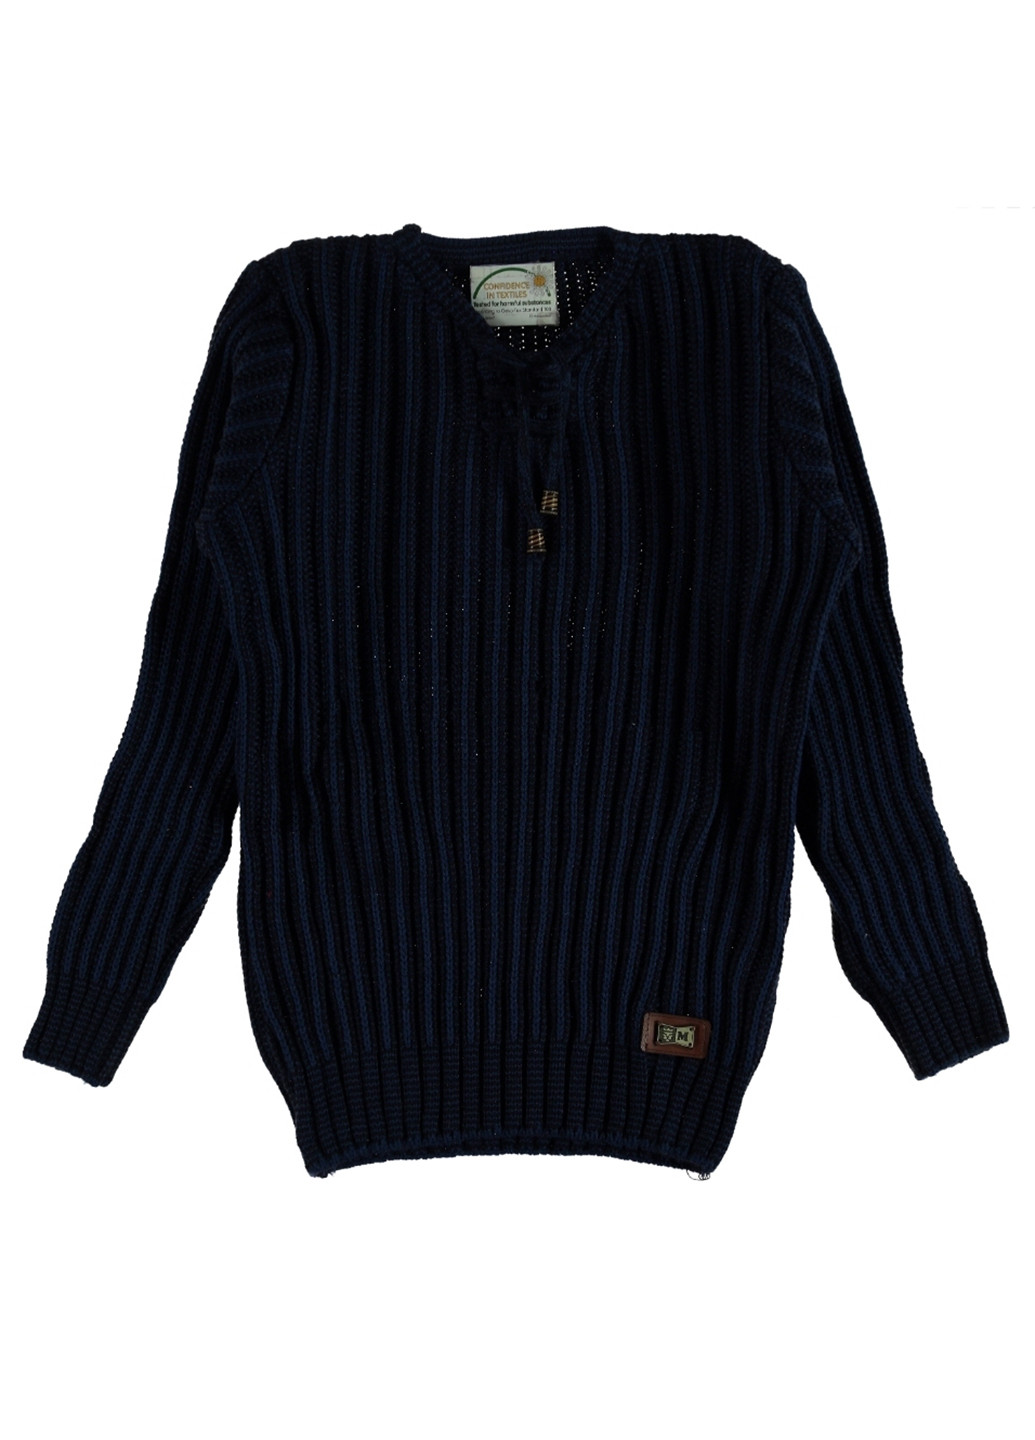 Синий демисезонный пуловер пуловер Milas